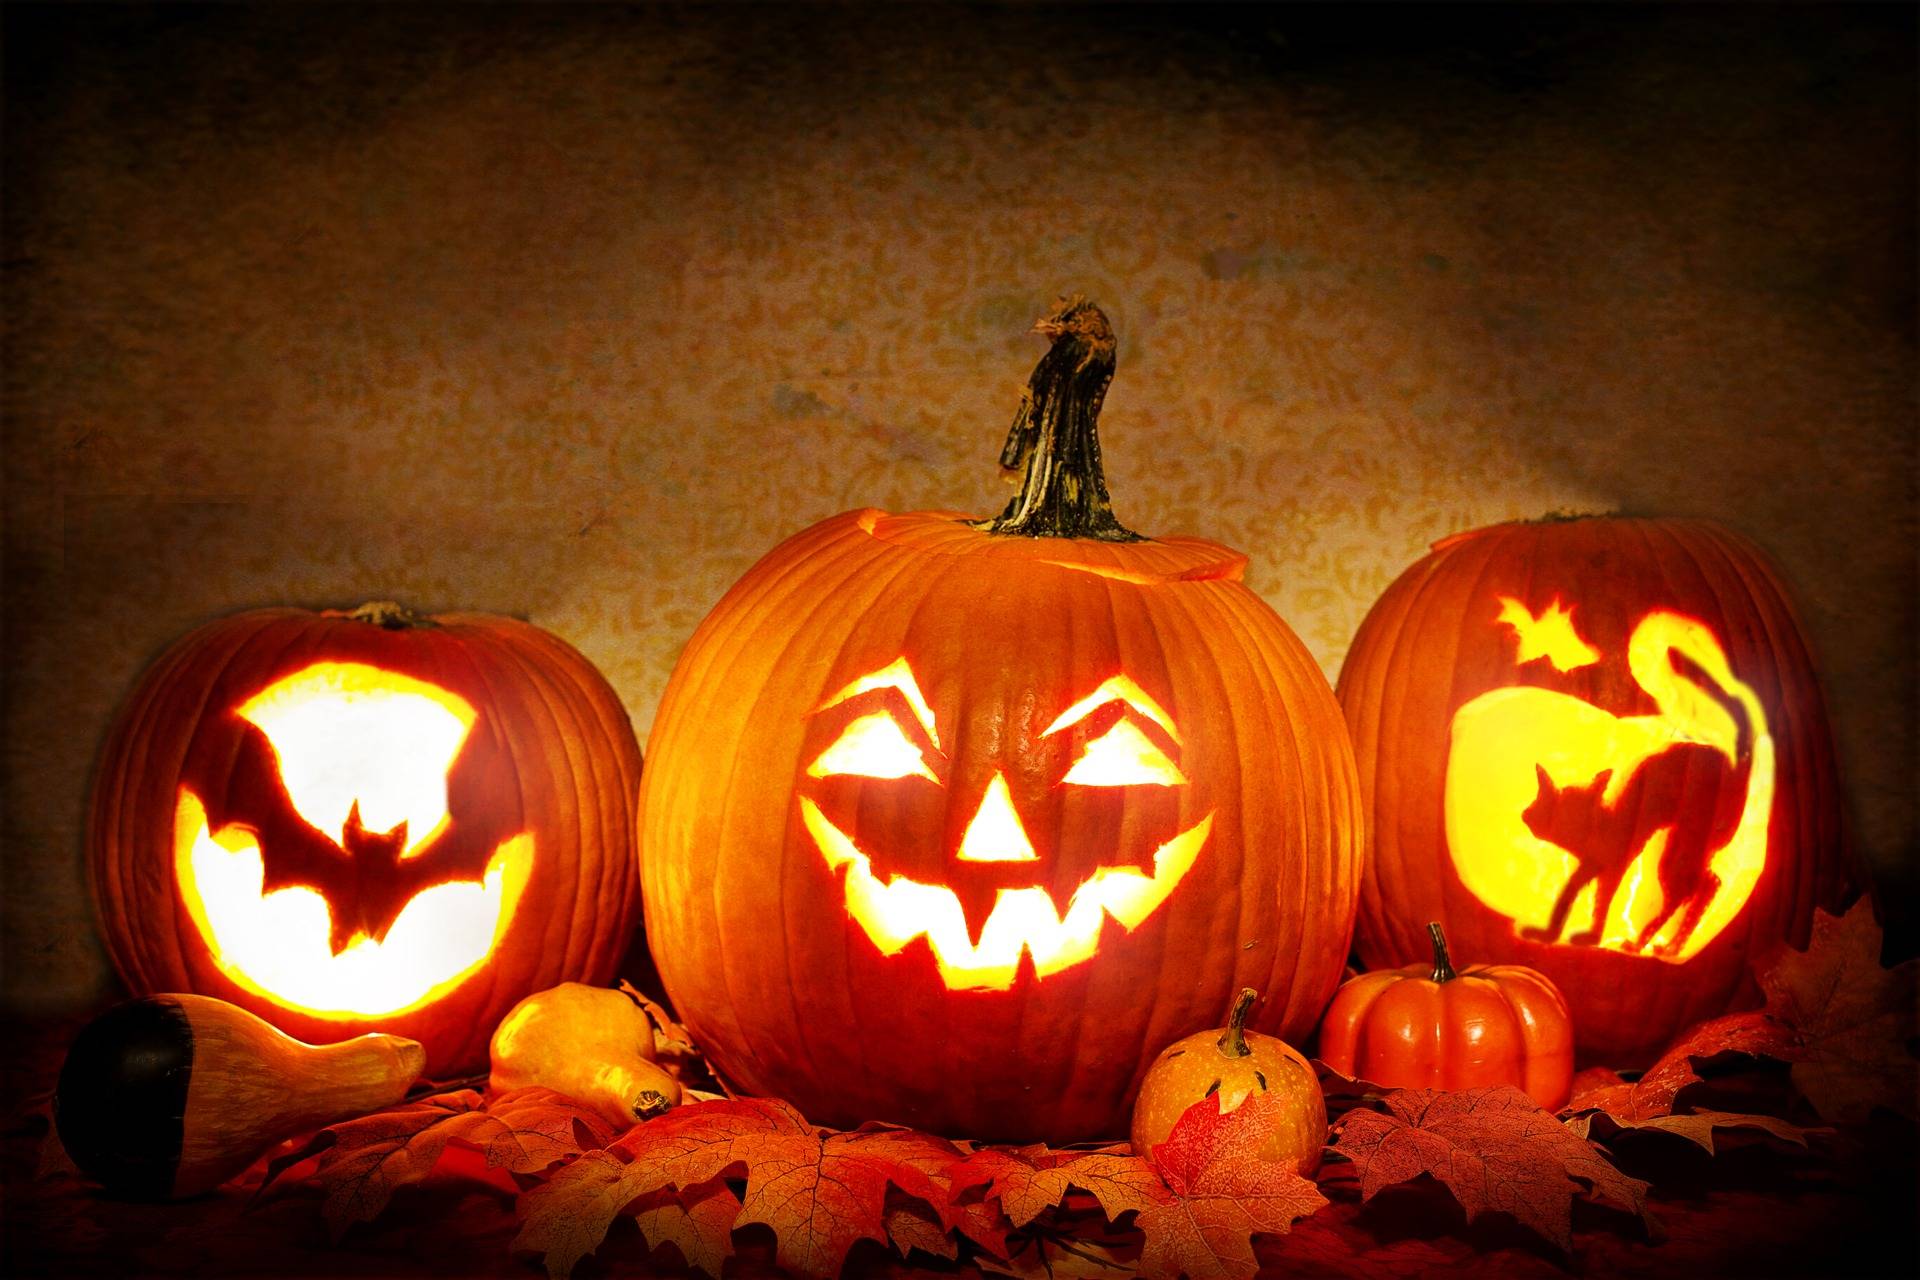  Die meisten denken, dass Halloween ein rein amerikanisches Fest ist, doch das stimmt nicht so ganz, der Name ist katholischen Ursprungs.  